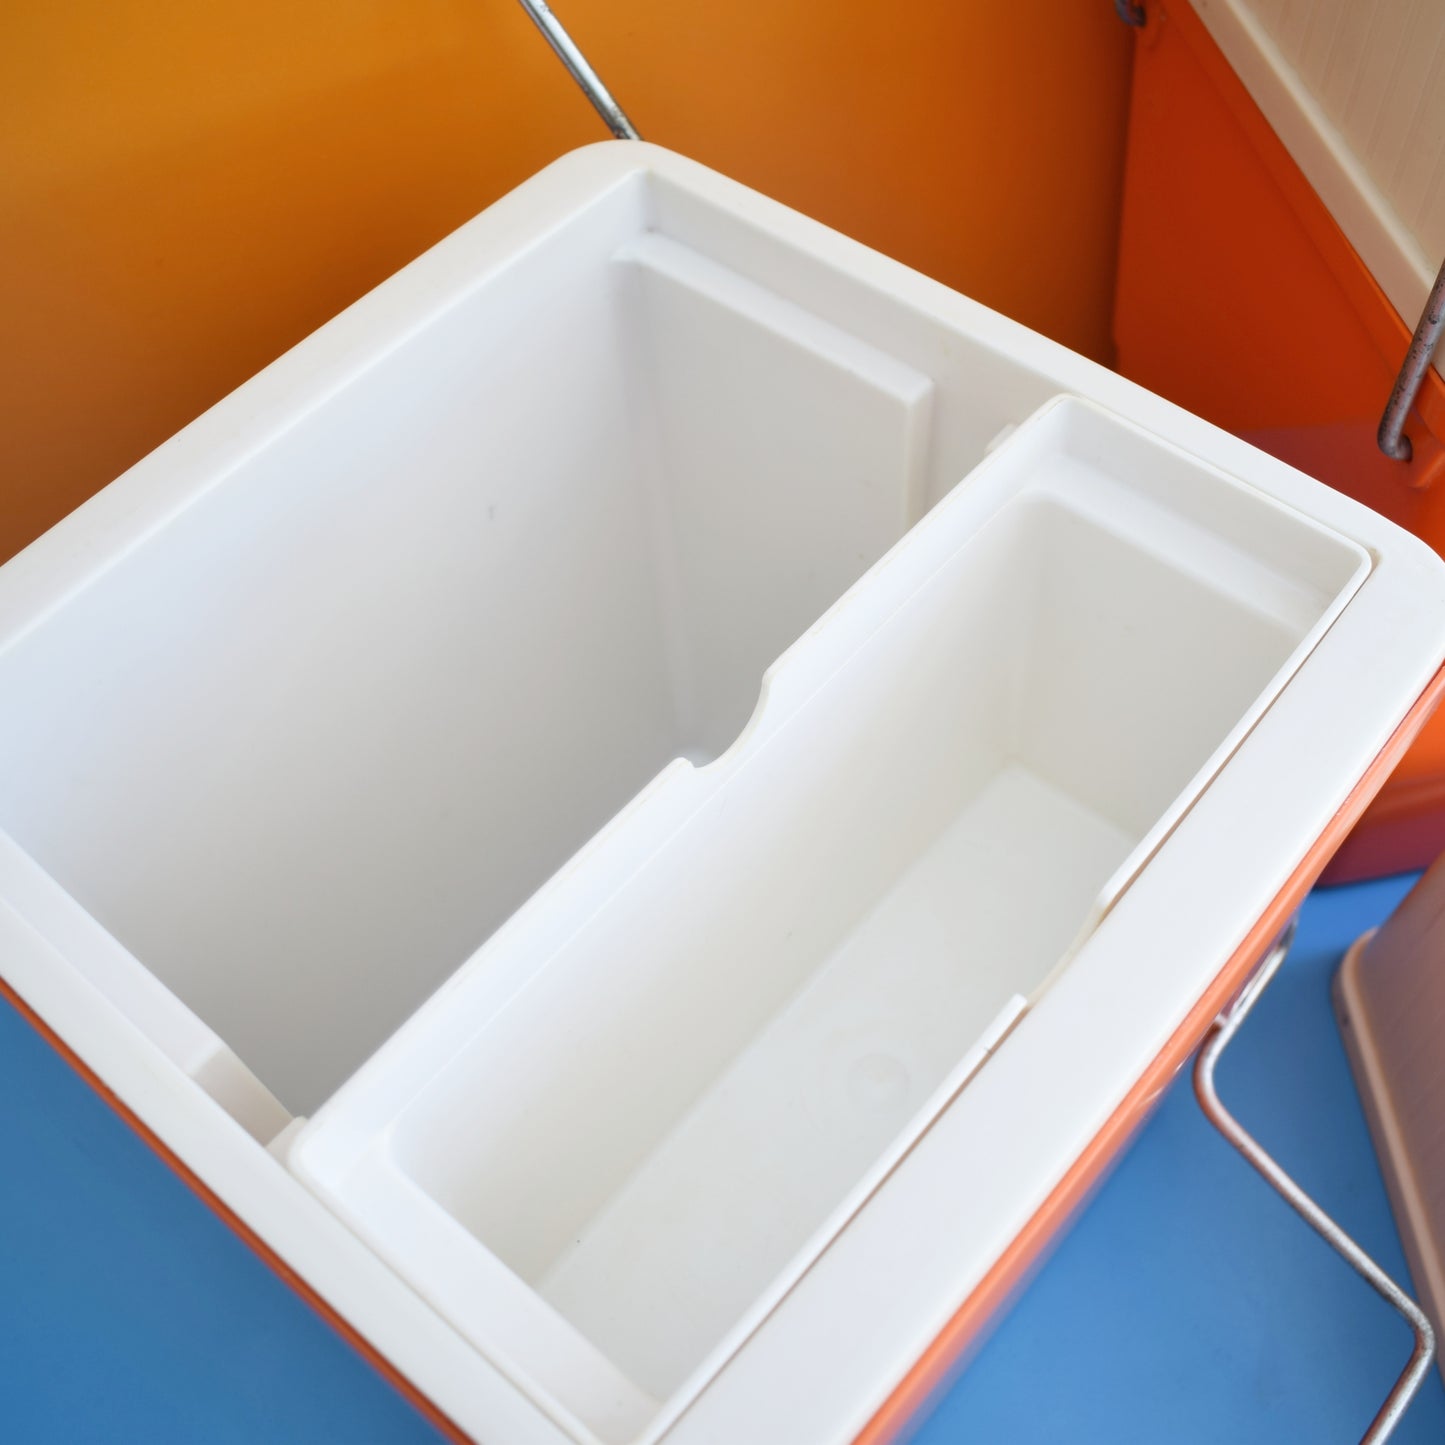 Vintage 1970s Cool boxes - Dutch- Orange